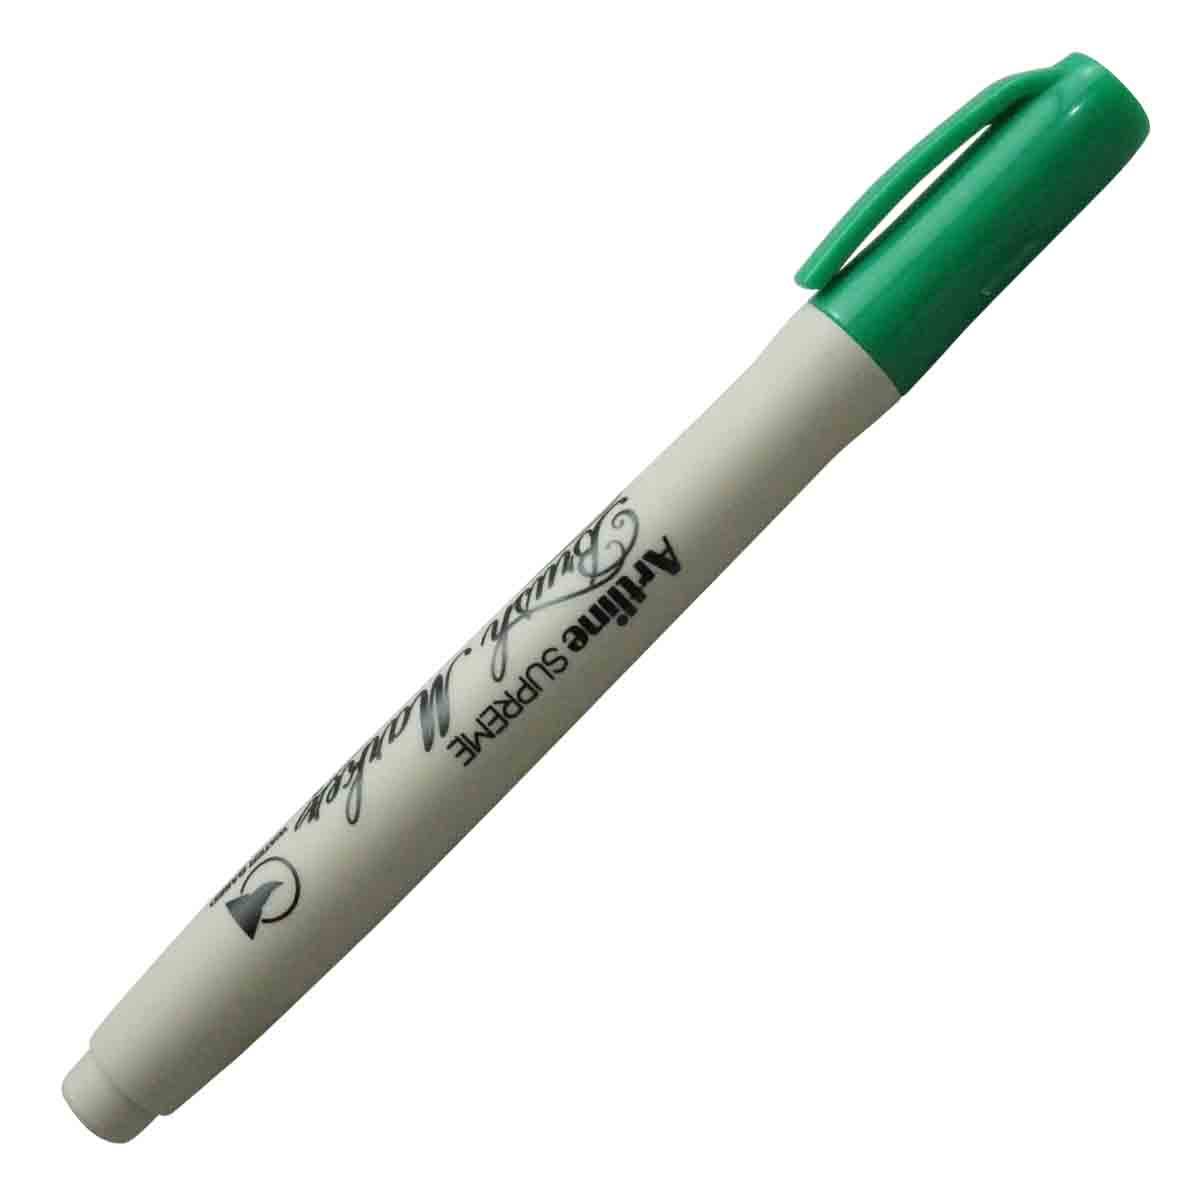 Artline Brush Marker - Green Color Model 18643